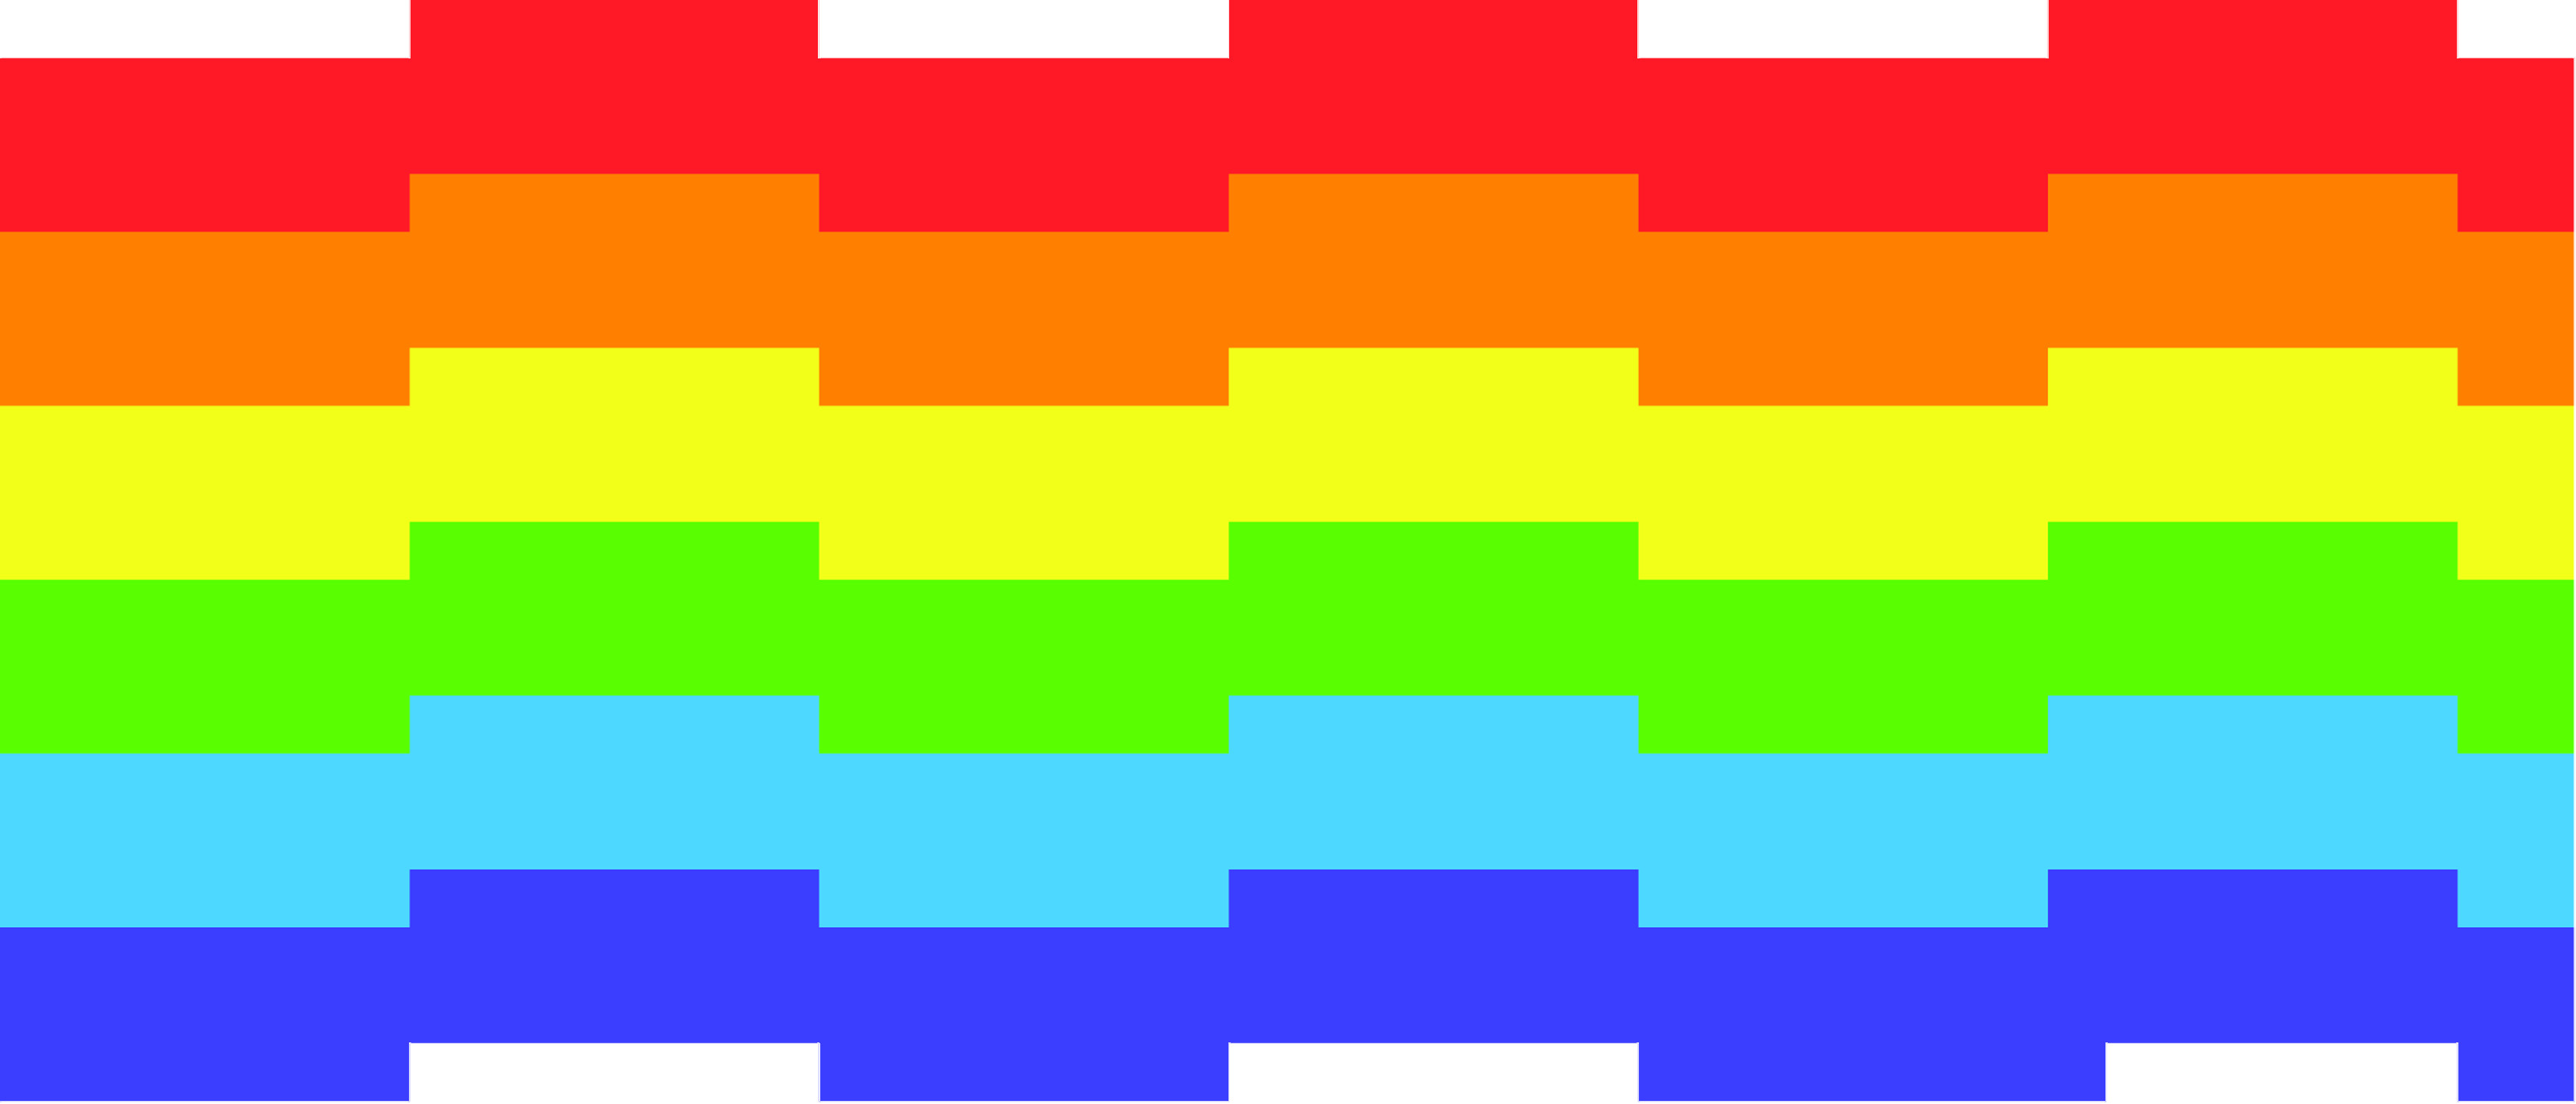 Nyan cats rainbow by kkiittuuss on DeviantArt Pusheen The Cat Wallpaper